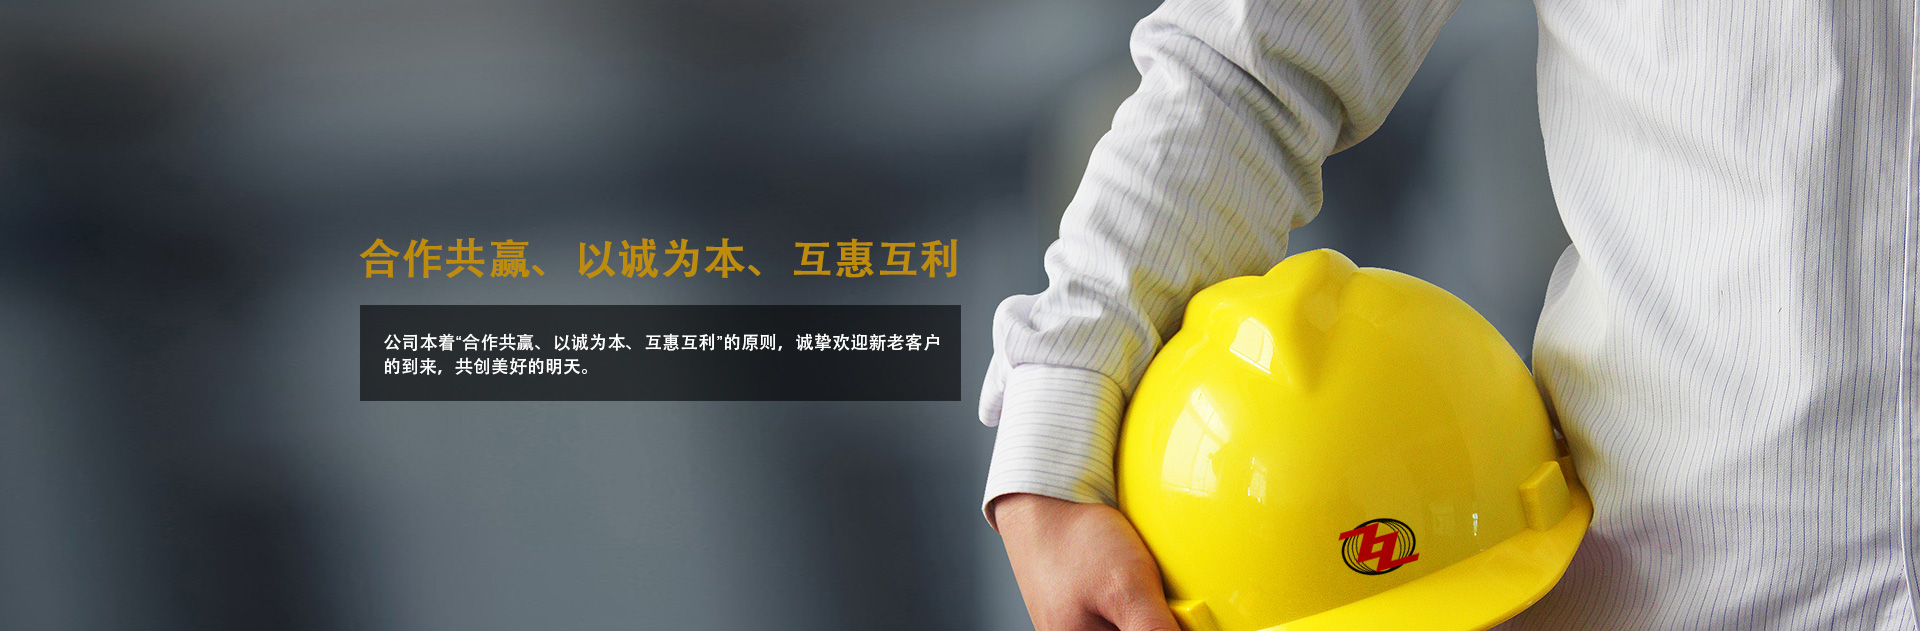 关于当前产品8k8体育app下载·(中国)官方网站的成功案例等相关图片